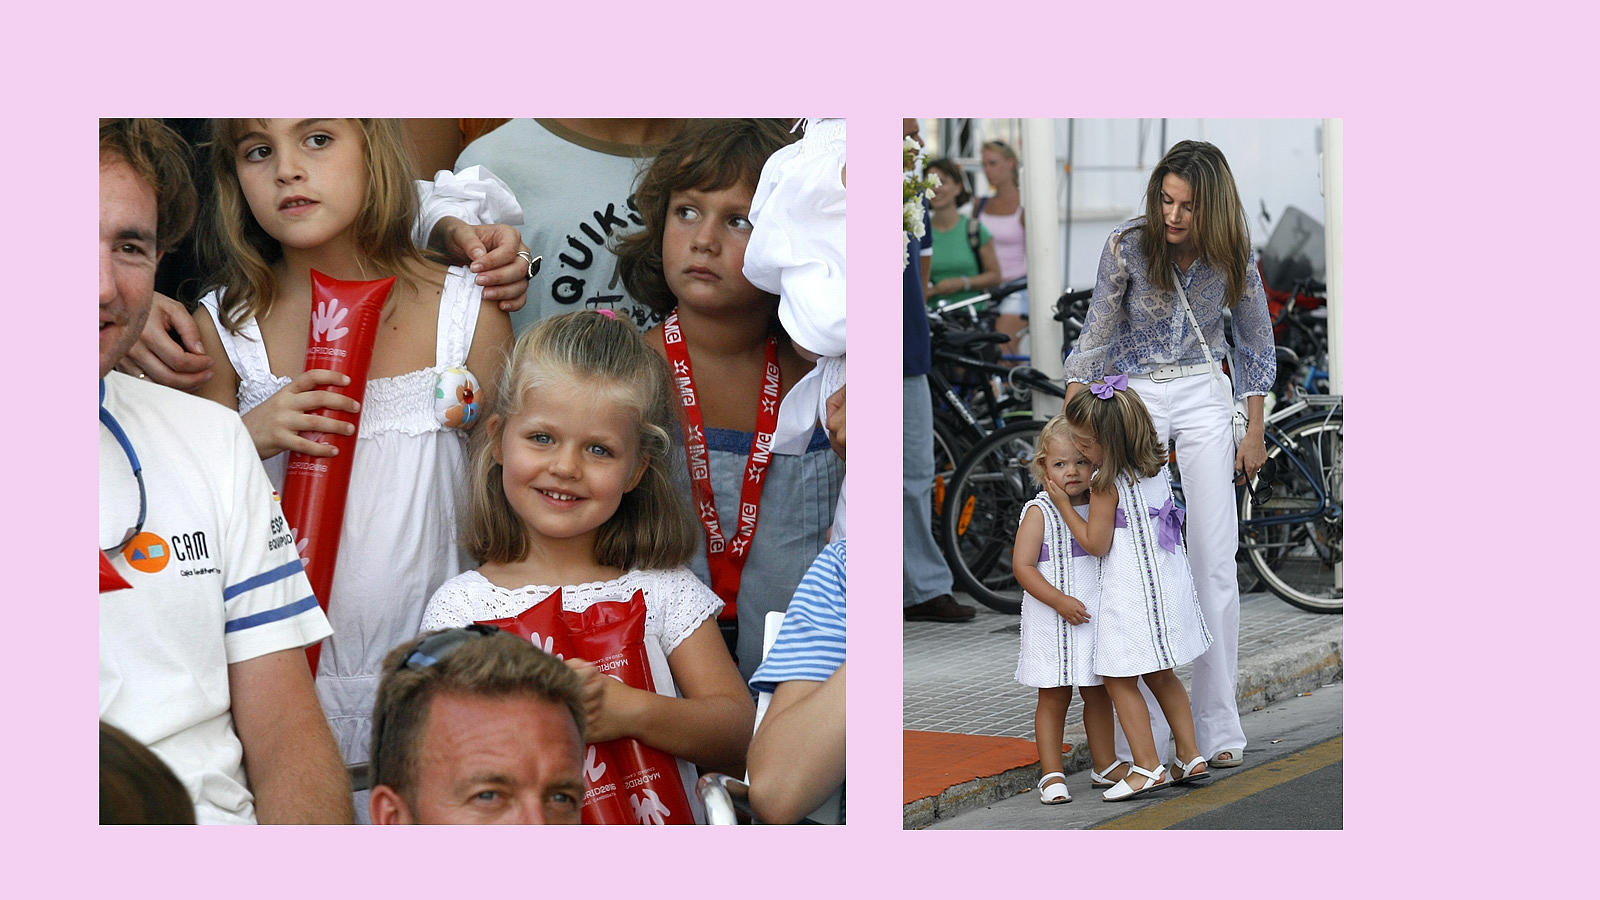 Durante las vacaciones de 2009, la Princesa disfrutó en el Club Nautico de Palma junto a otros niños. Inseparable de su hermana, la Infanta Sofía, le da un espontáneo y cariñoso beso en plena calle de Palma